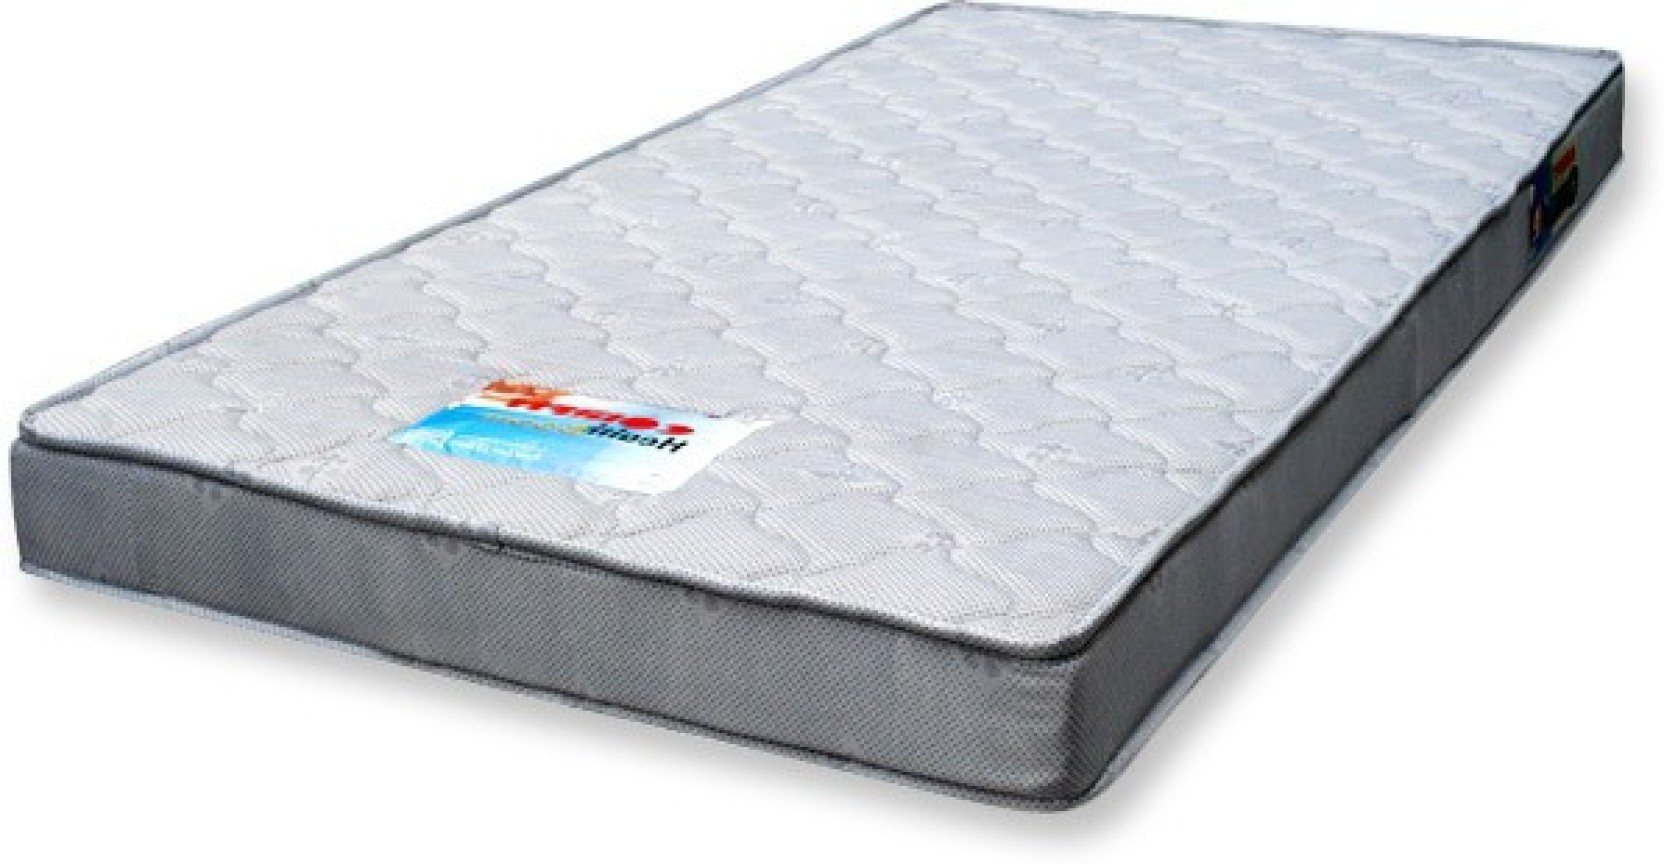 coirfit health boom mattress price